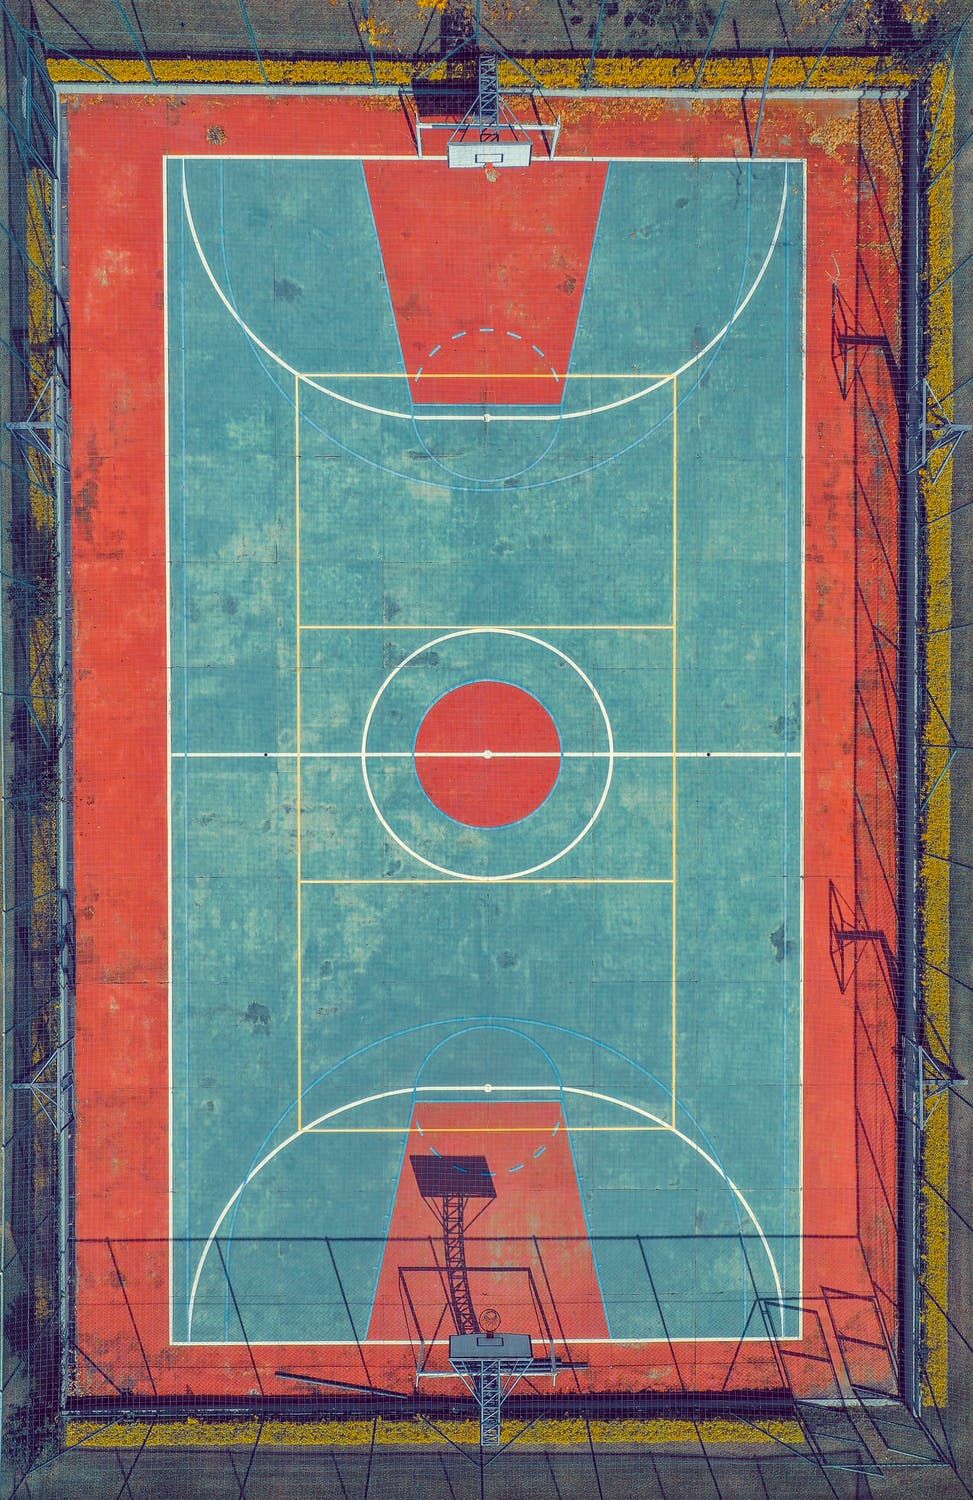 La imagen muestra una vista superior de una cancha de baloncesto.